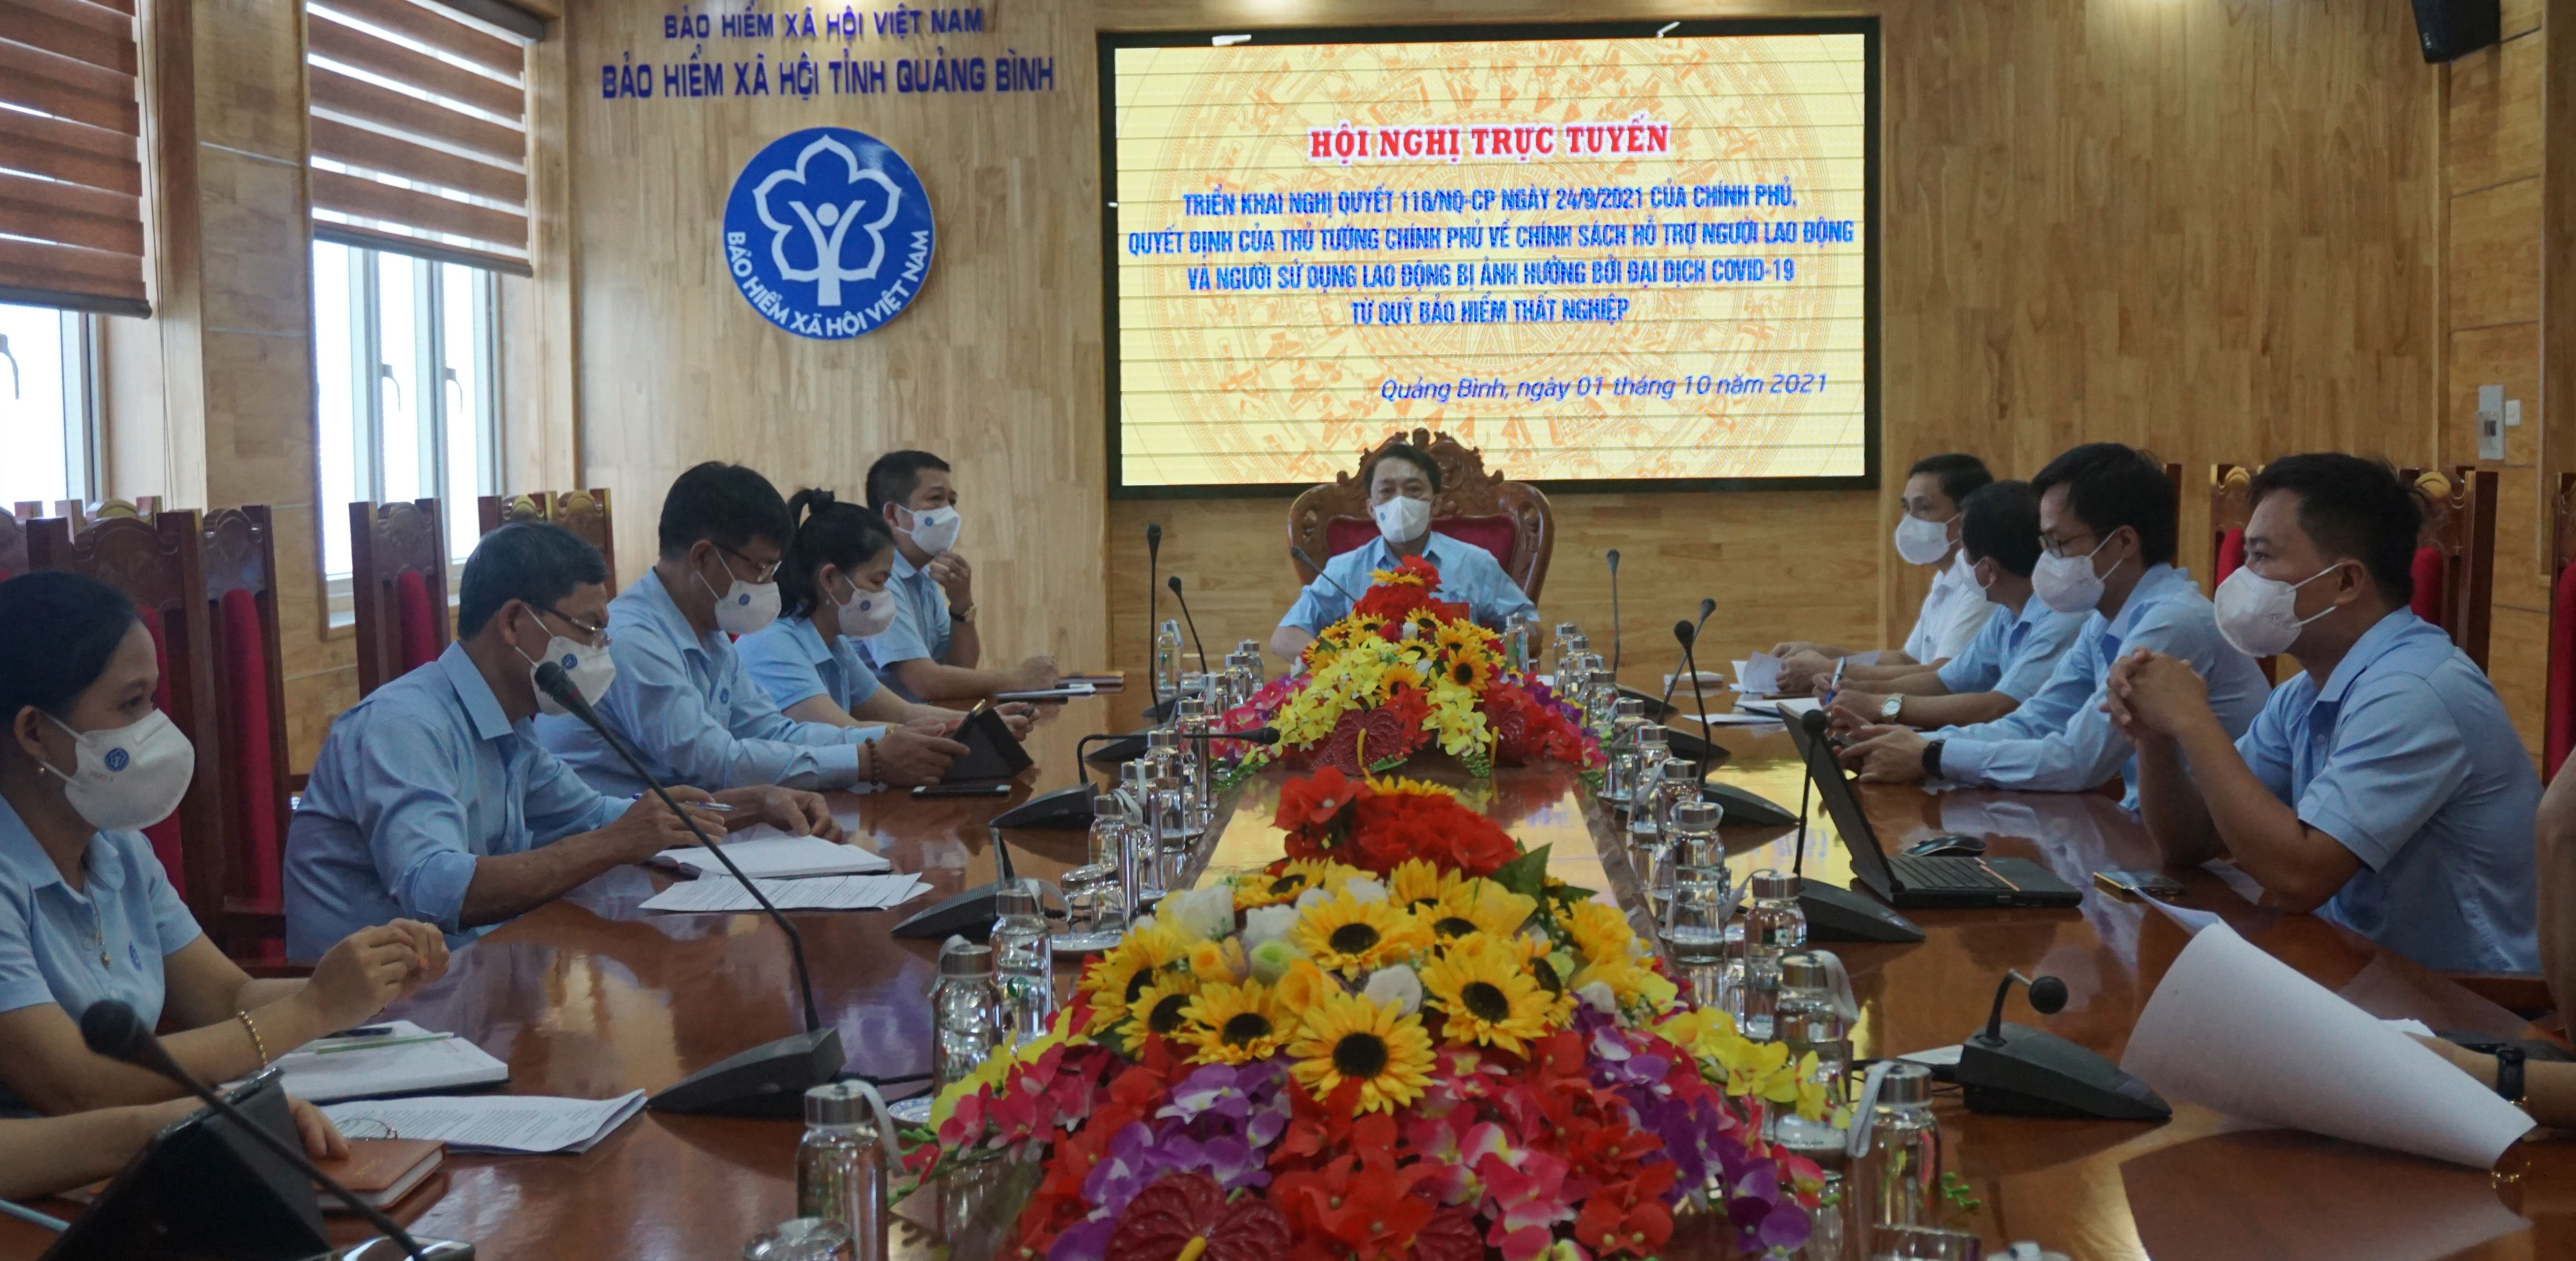 Các đại biểu tham dự hội nghị ở điểm cầu BHXH tỉnh Quảng Bình.